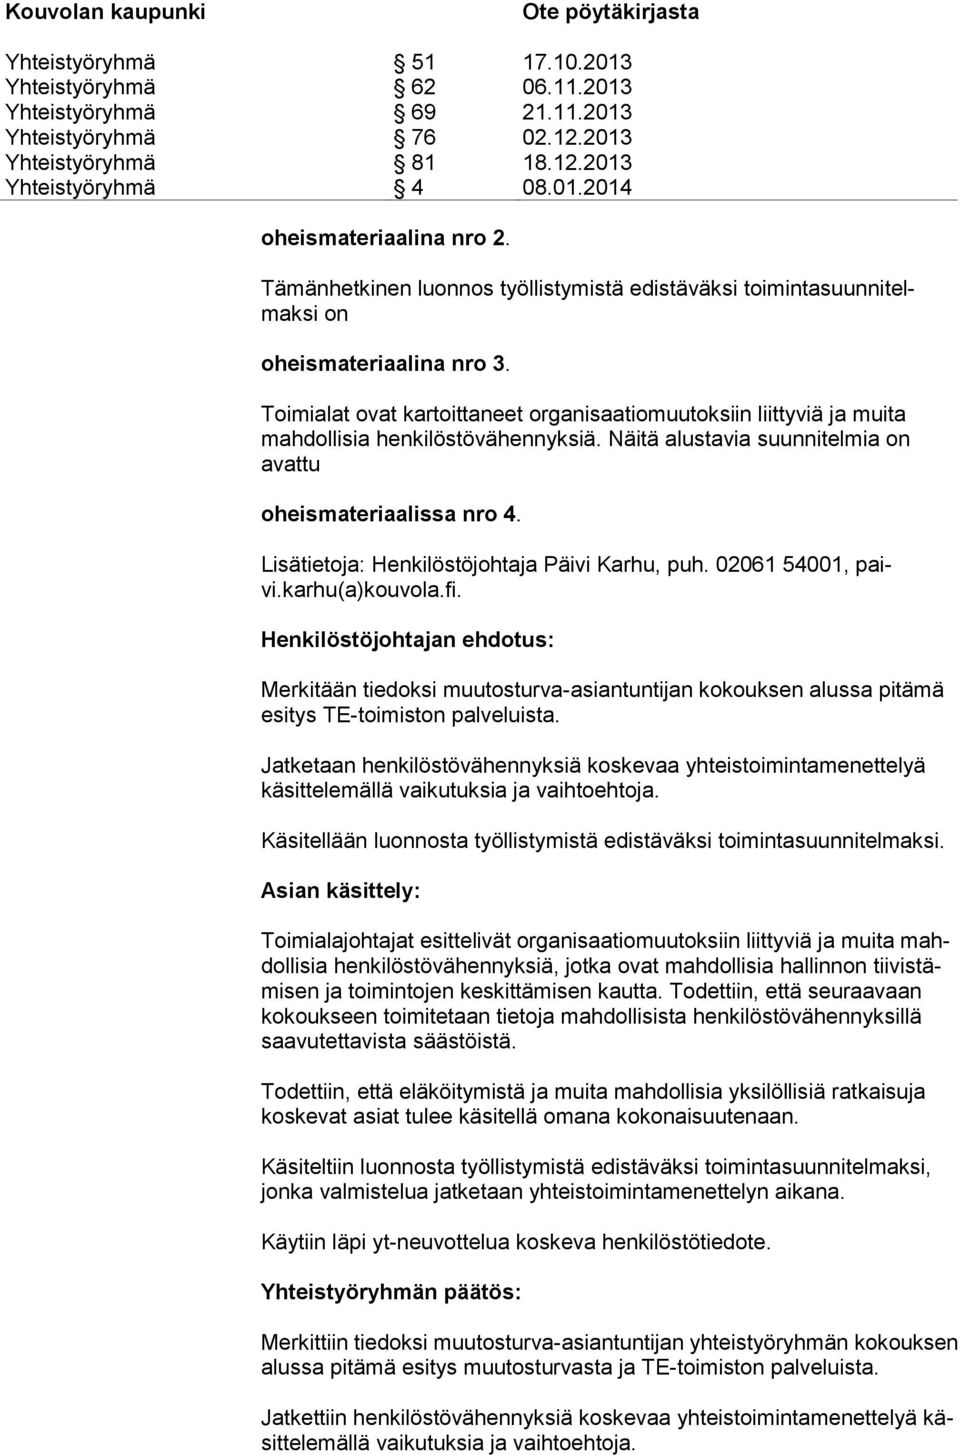 Lisätietoja: Henkilöstöjohtaja Päivi Karhu, puh. 02061 54001, paivi.karhu(a)kouvola.fi.